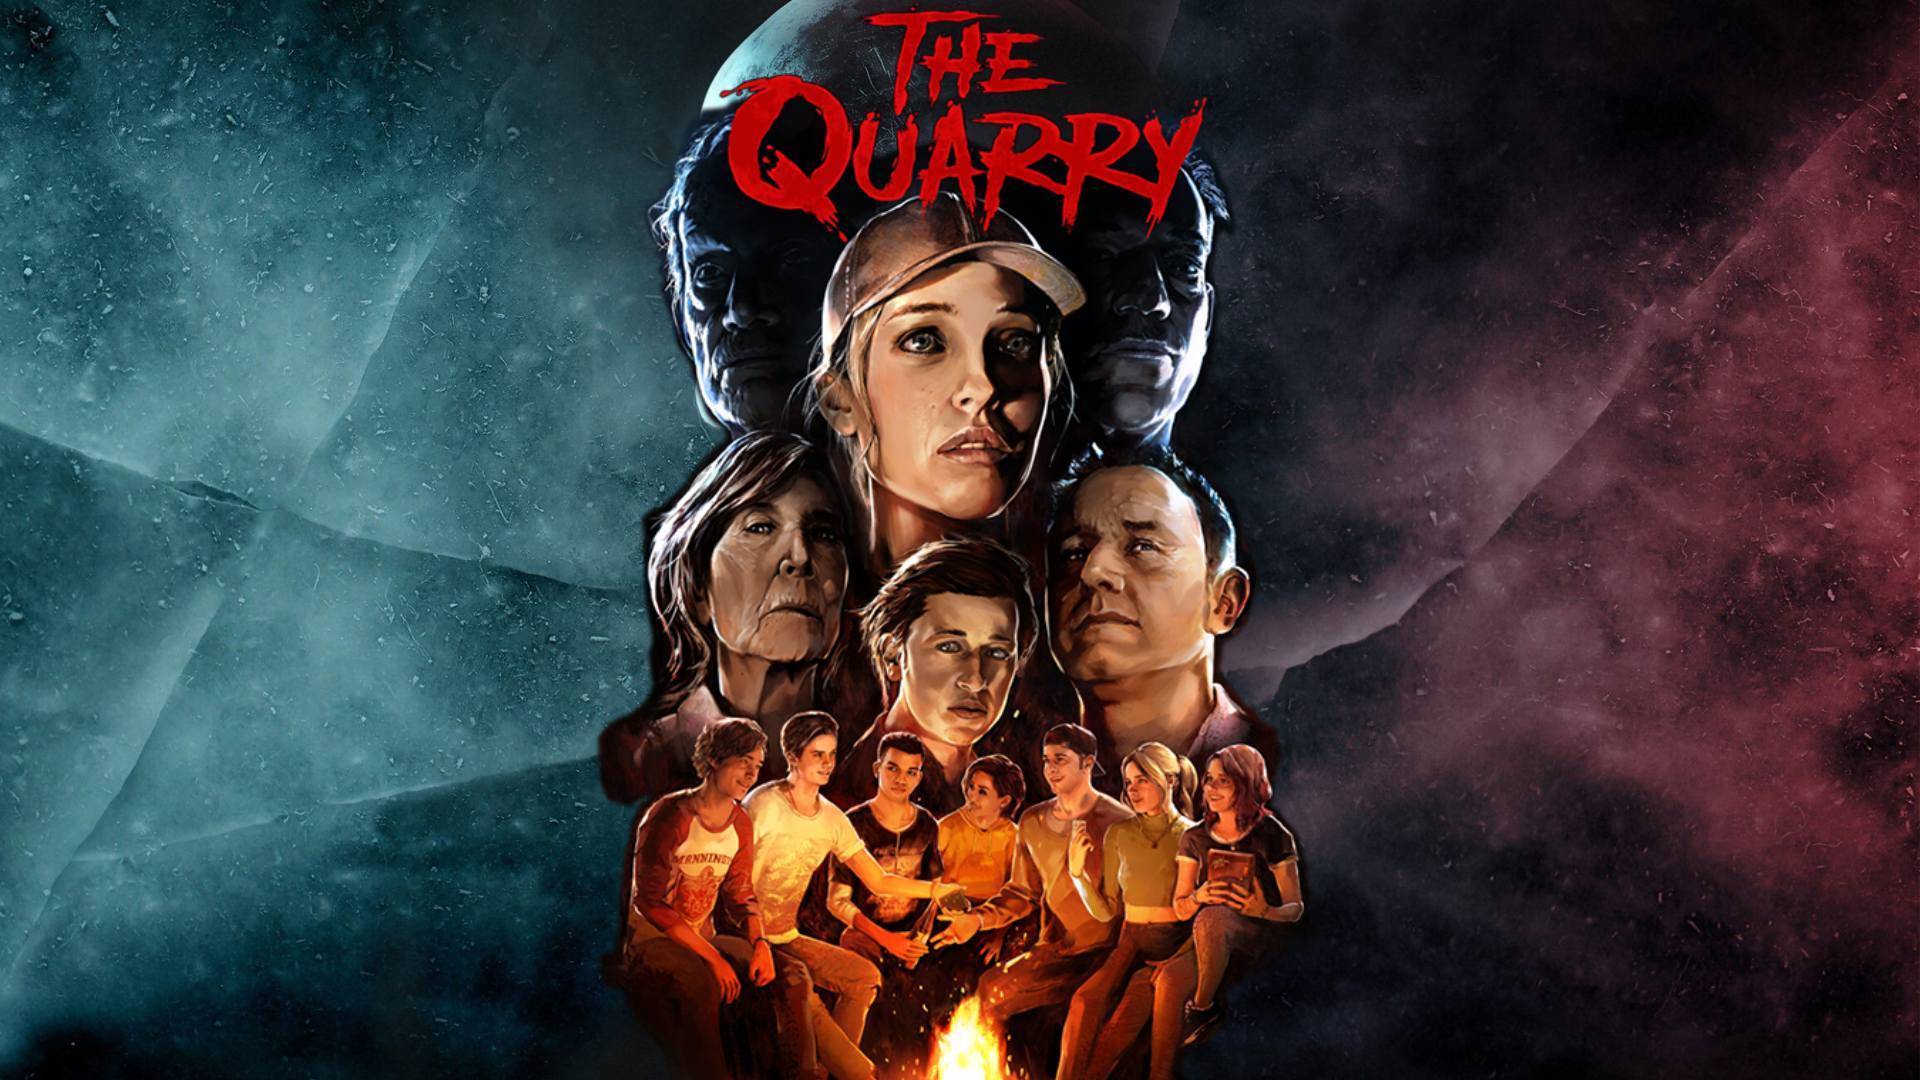 بازی The Quarry برای PS5